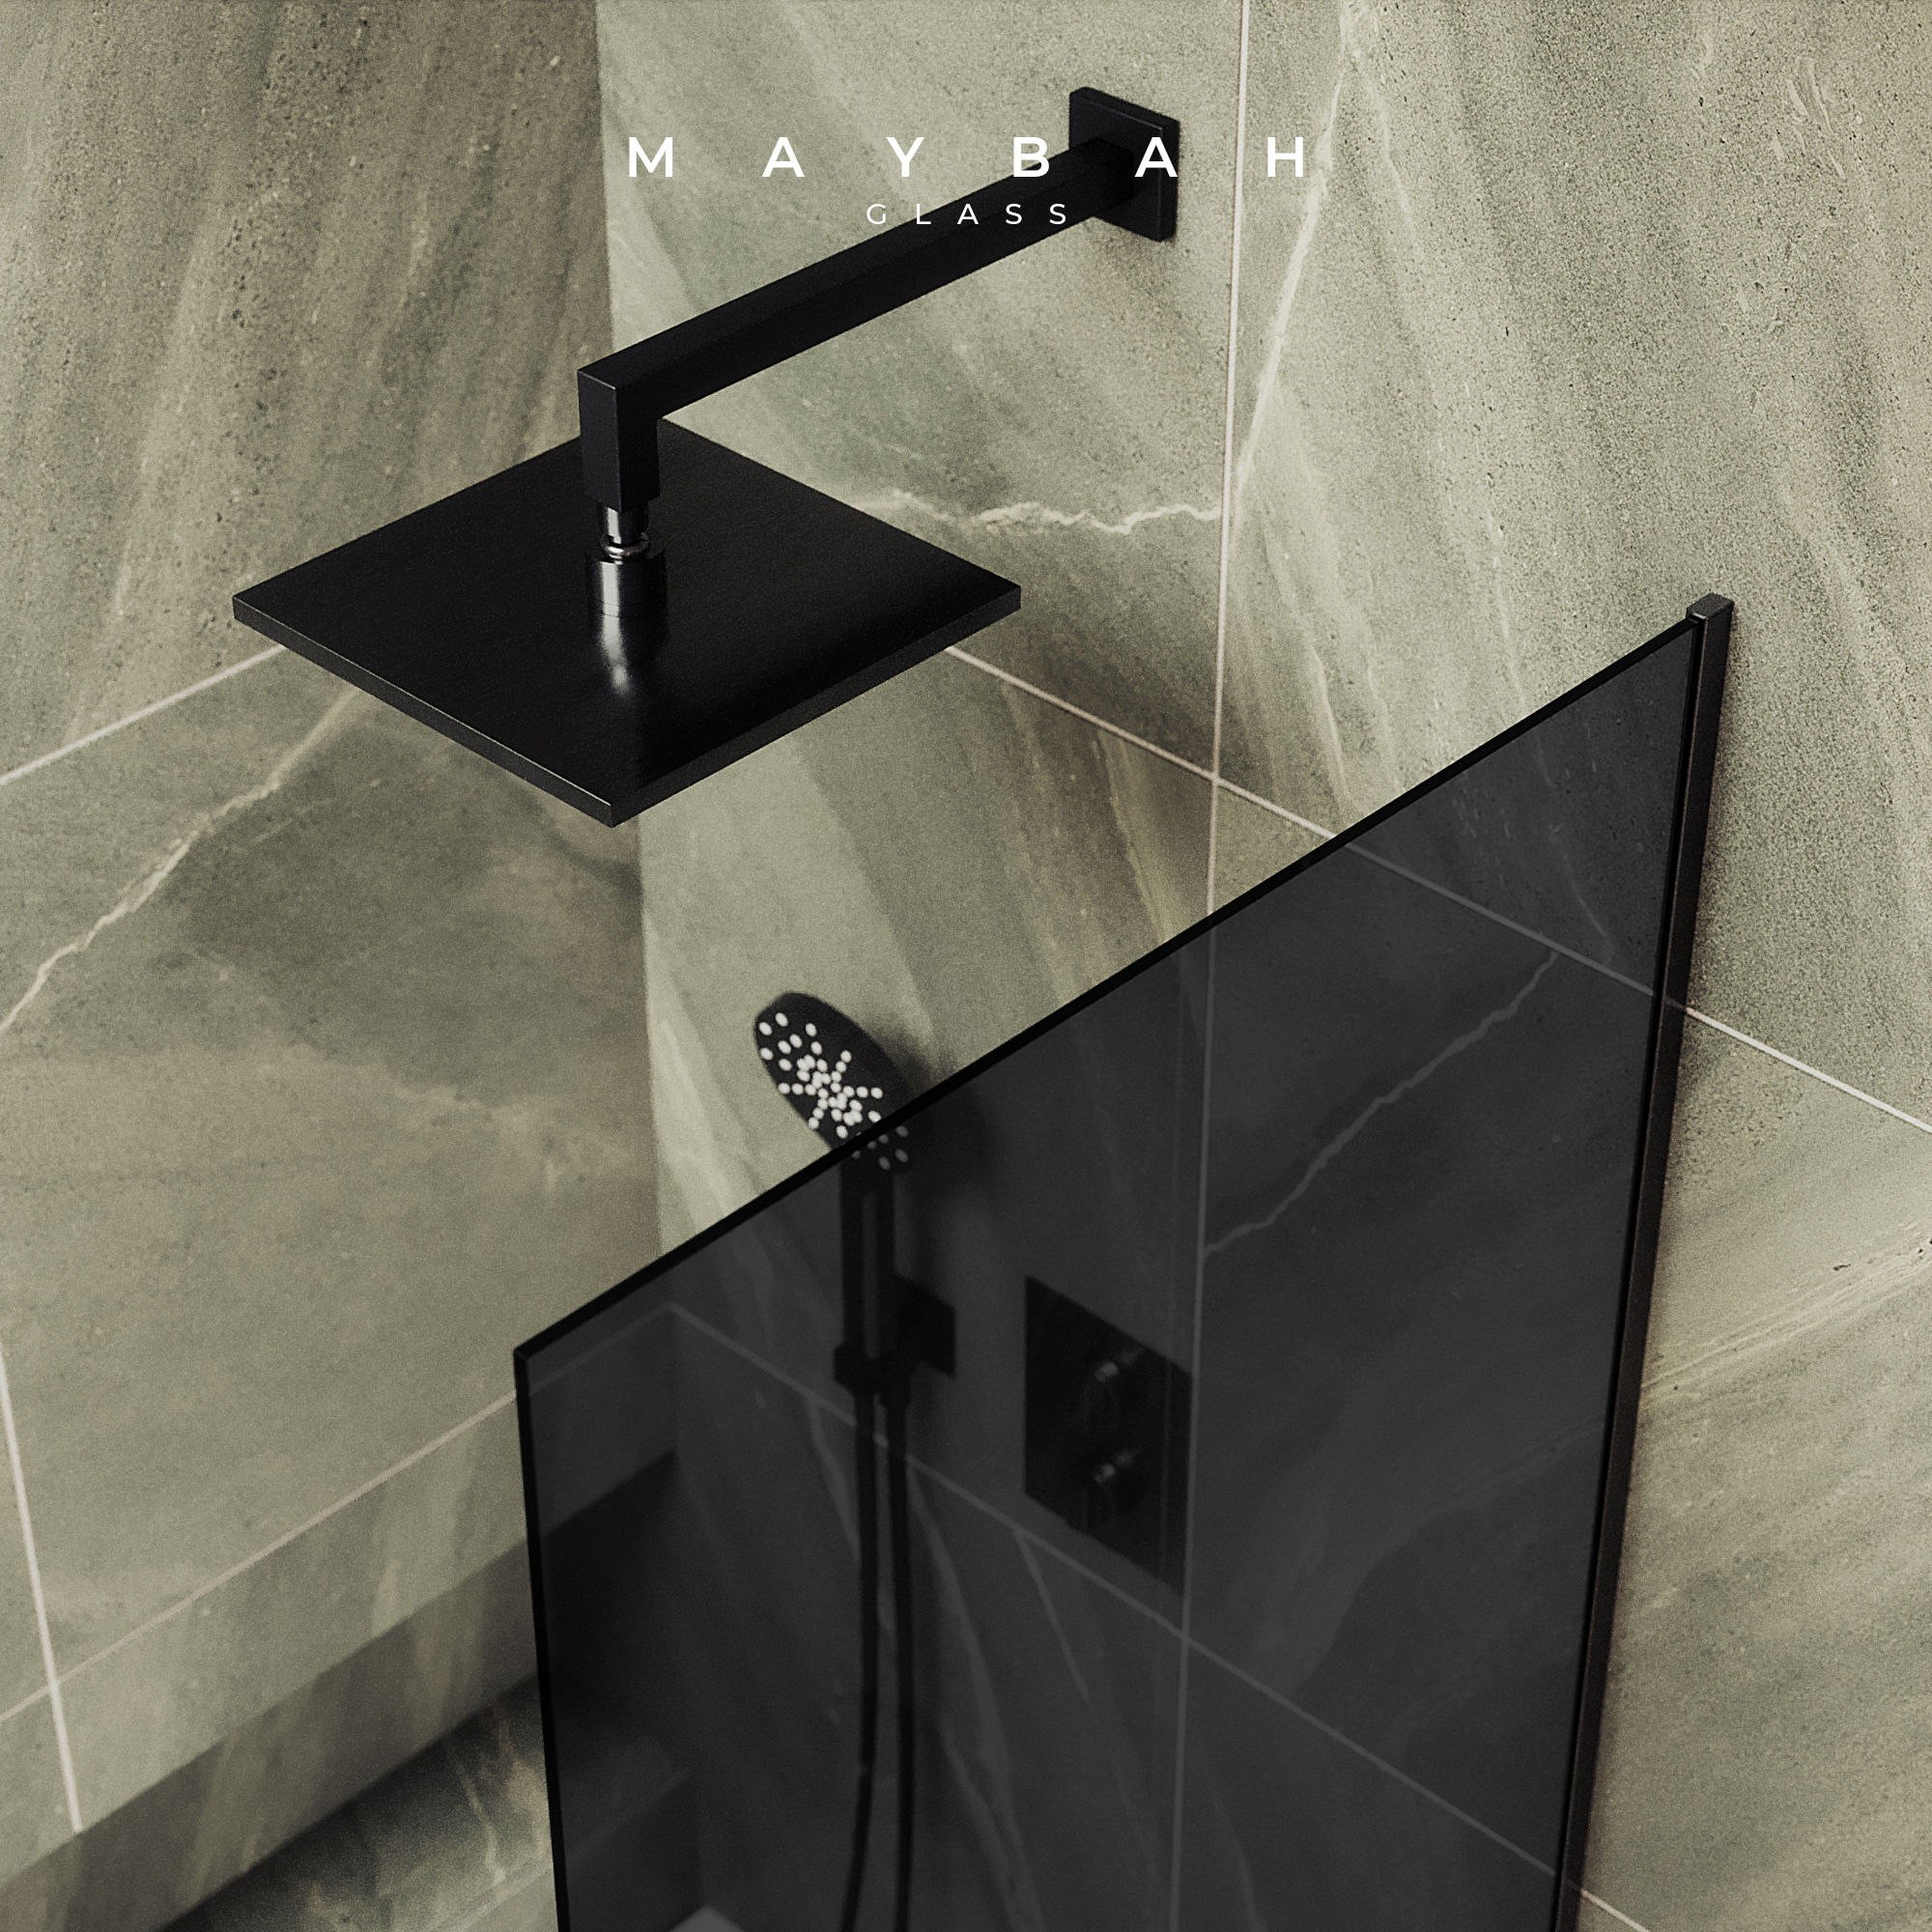 Шторка для ванны MaybahGlass 80х140 MGV-82-6у стекло графит, профиль черный - фото 4